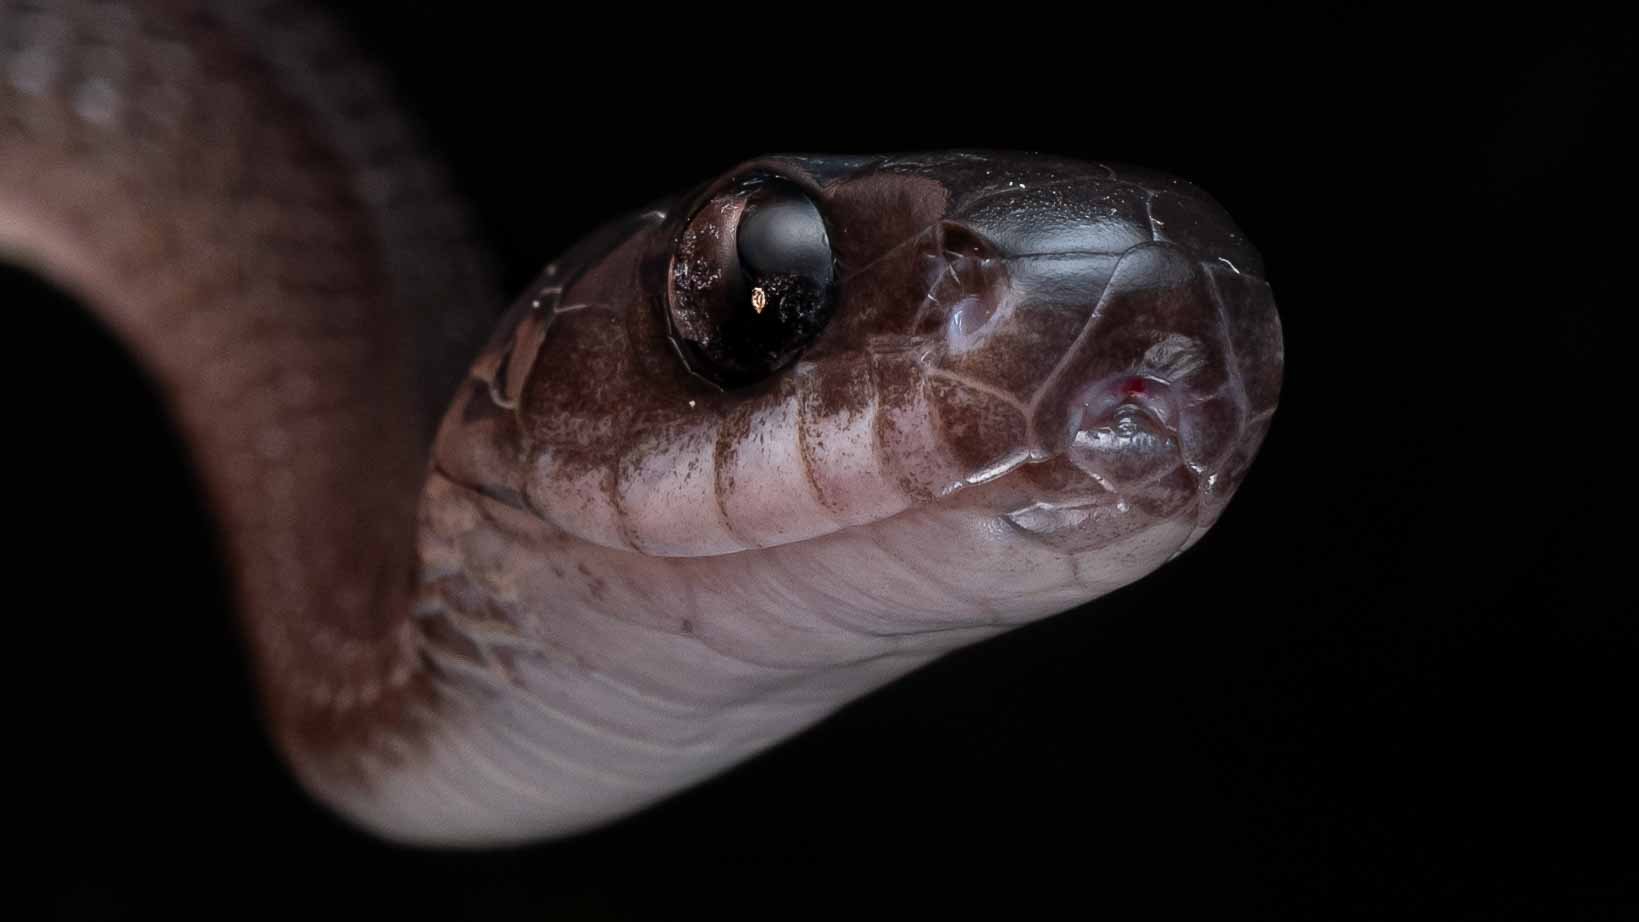 Mirkwood Forest Slug Snake - Asthenodipsas lasgalenensis